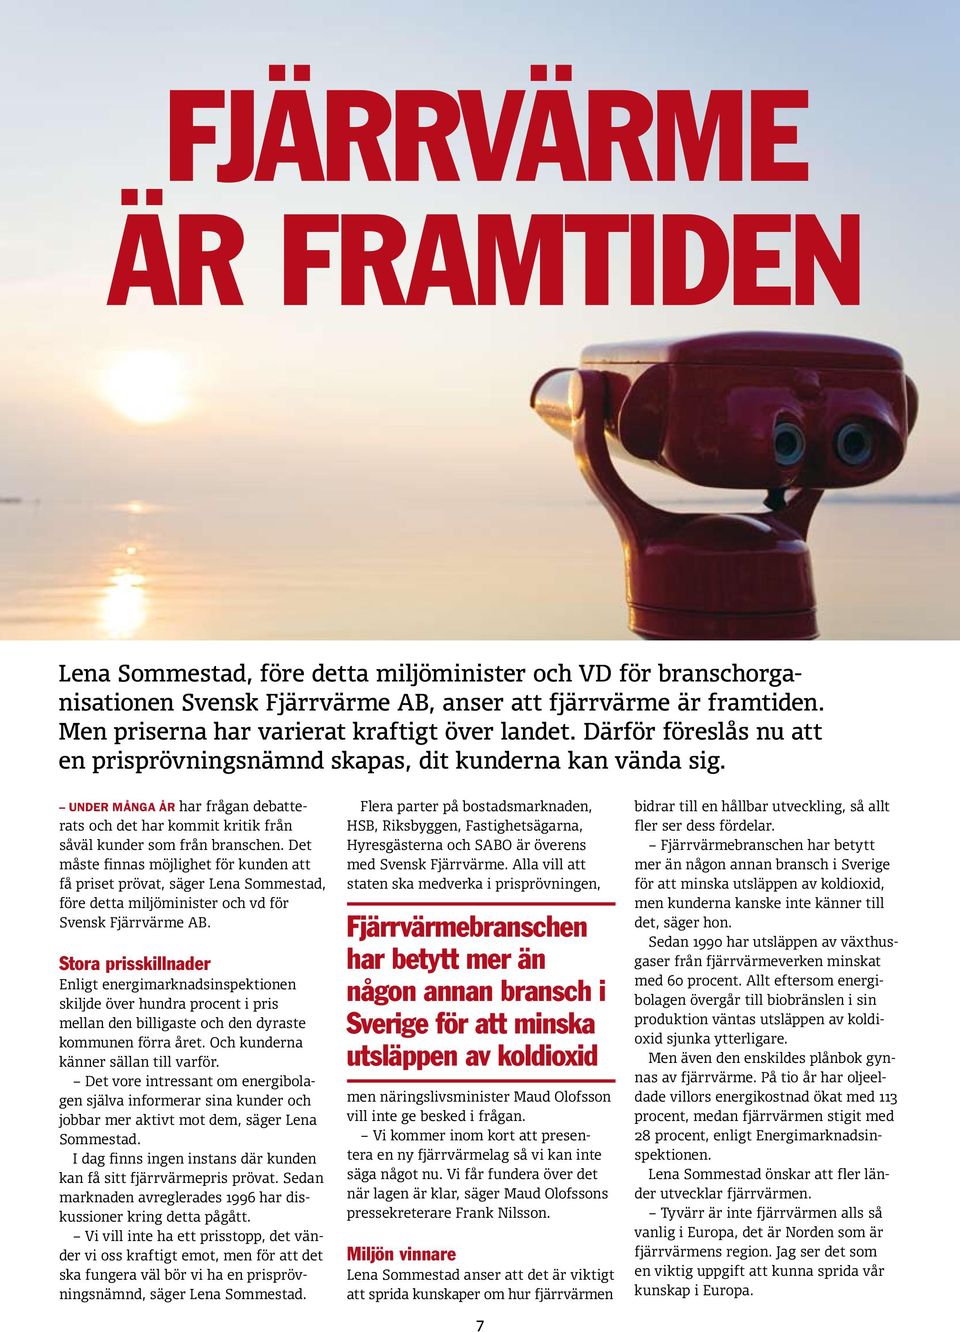 Det måste finnas möjlighet för kunden att få priset prövat, säger Lena Sommestad, före detta miljöminister och vd för Svensk Fjärrvärme AB.